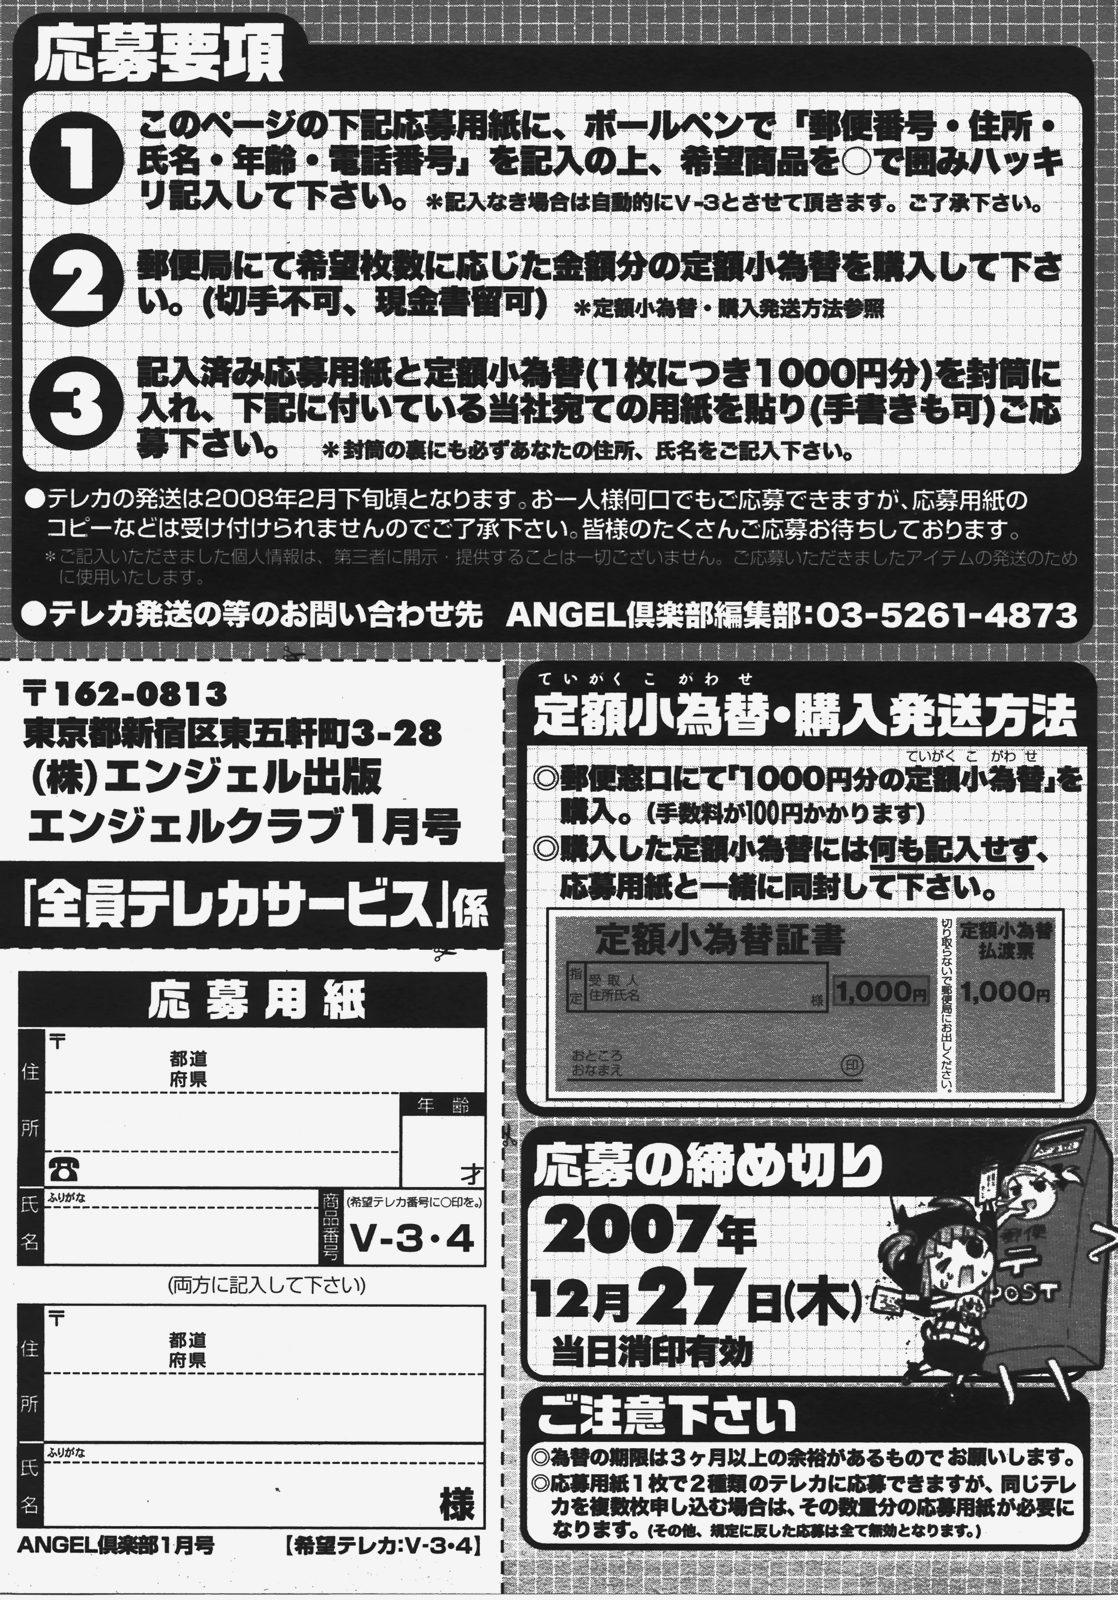 ANGEL Club 2008-01 199